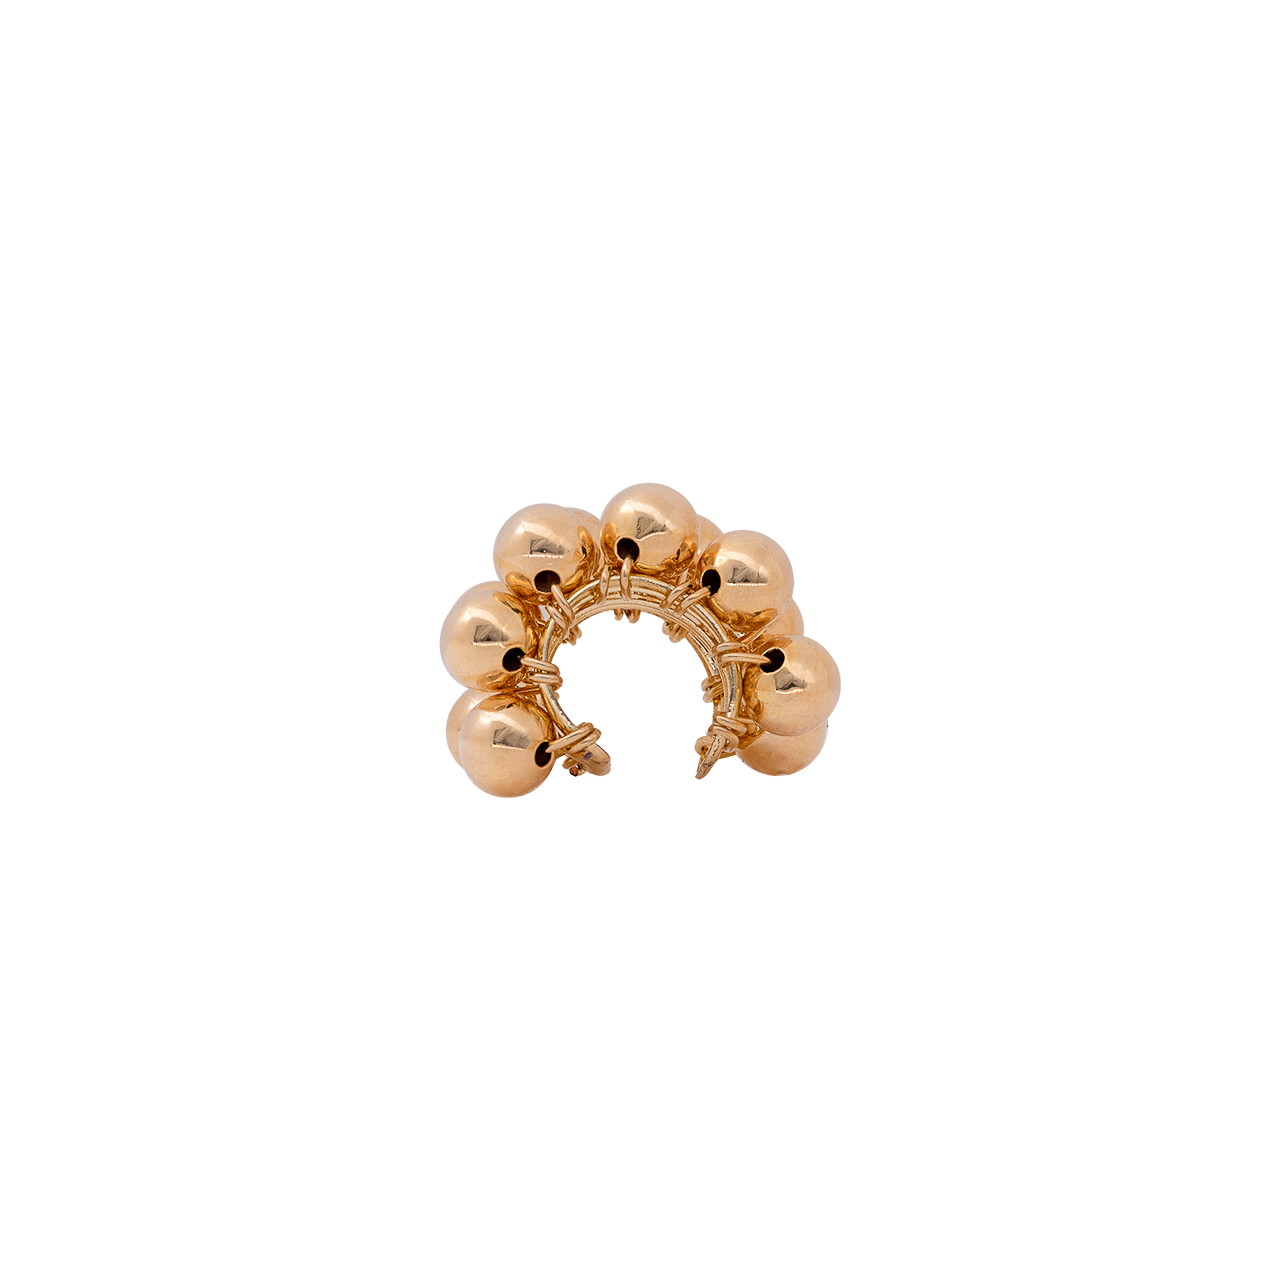 Earcuff de bronce con baño de oro 24k- Jewelry- Joyeria- brand- ventas al mayor- exclusiviad- tendencia marca SODHANA